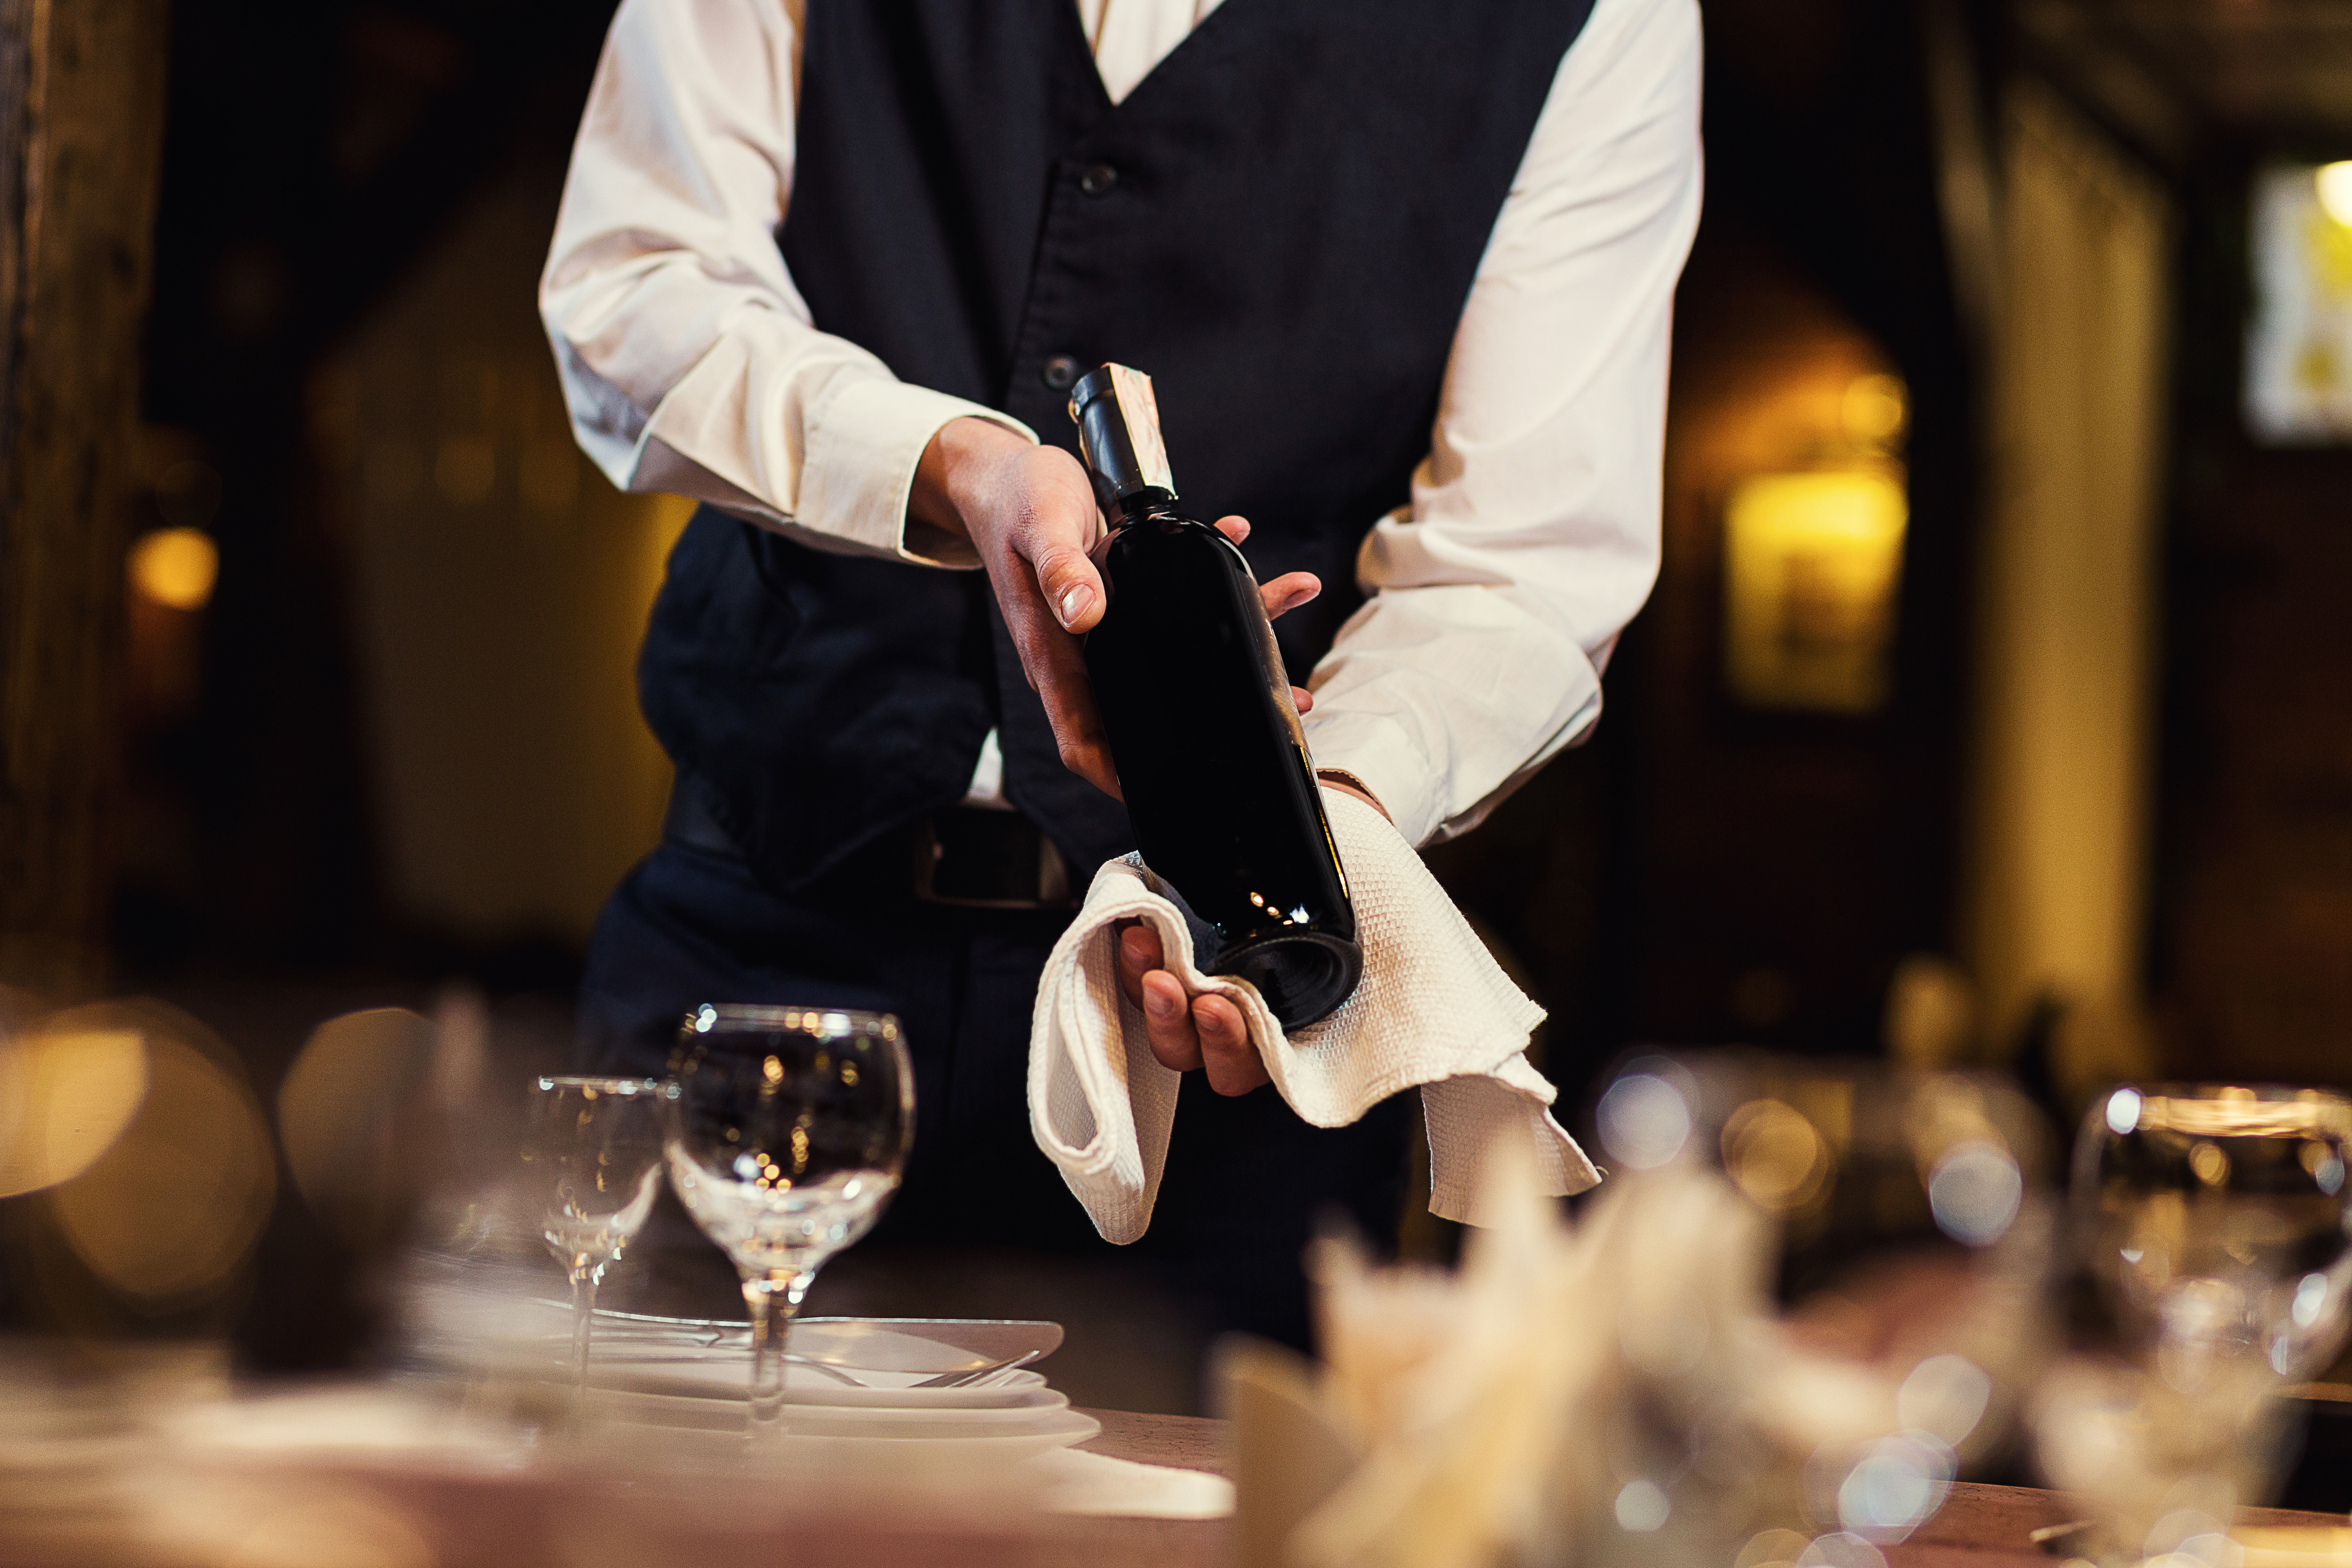 El camarero de uniforme con una toalla blanca. | Fuente: Shutterstock